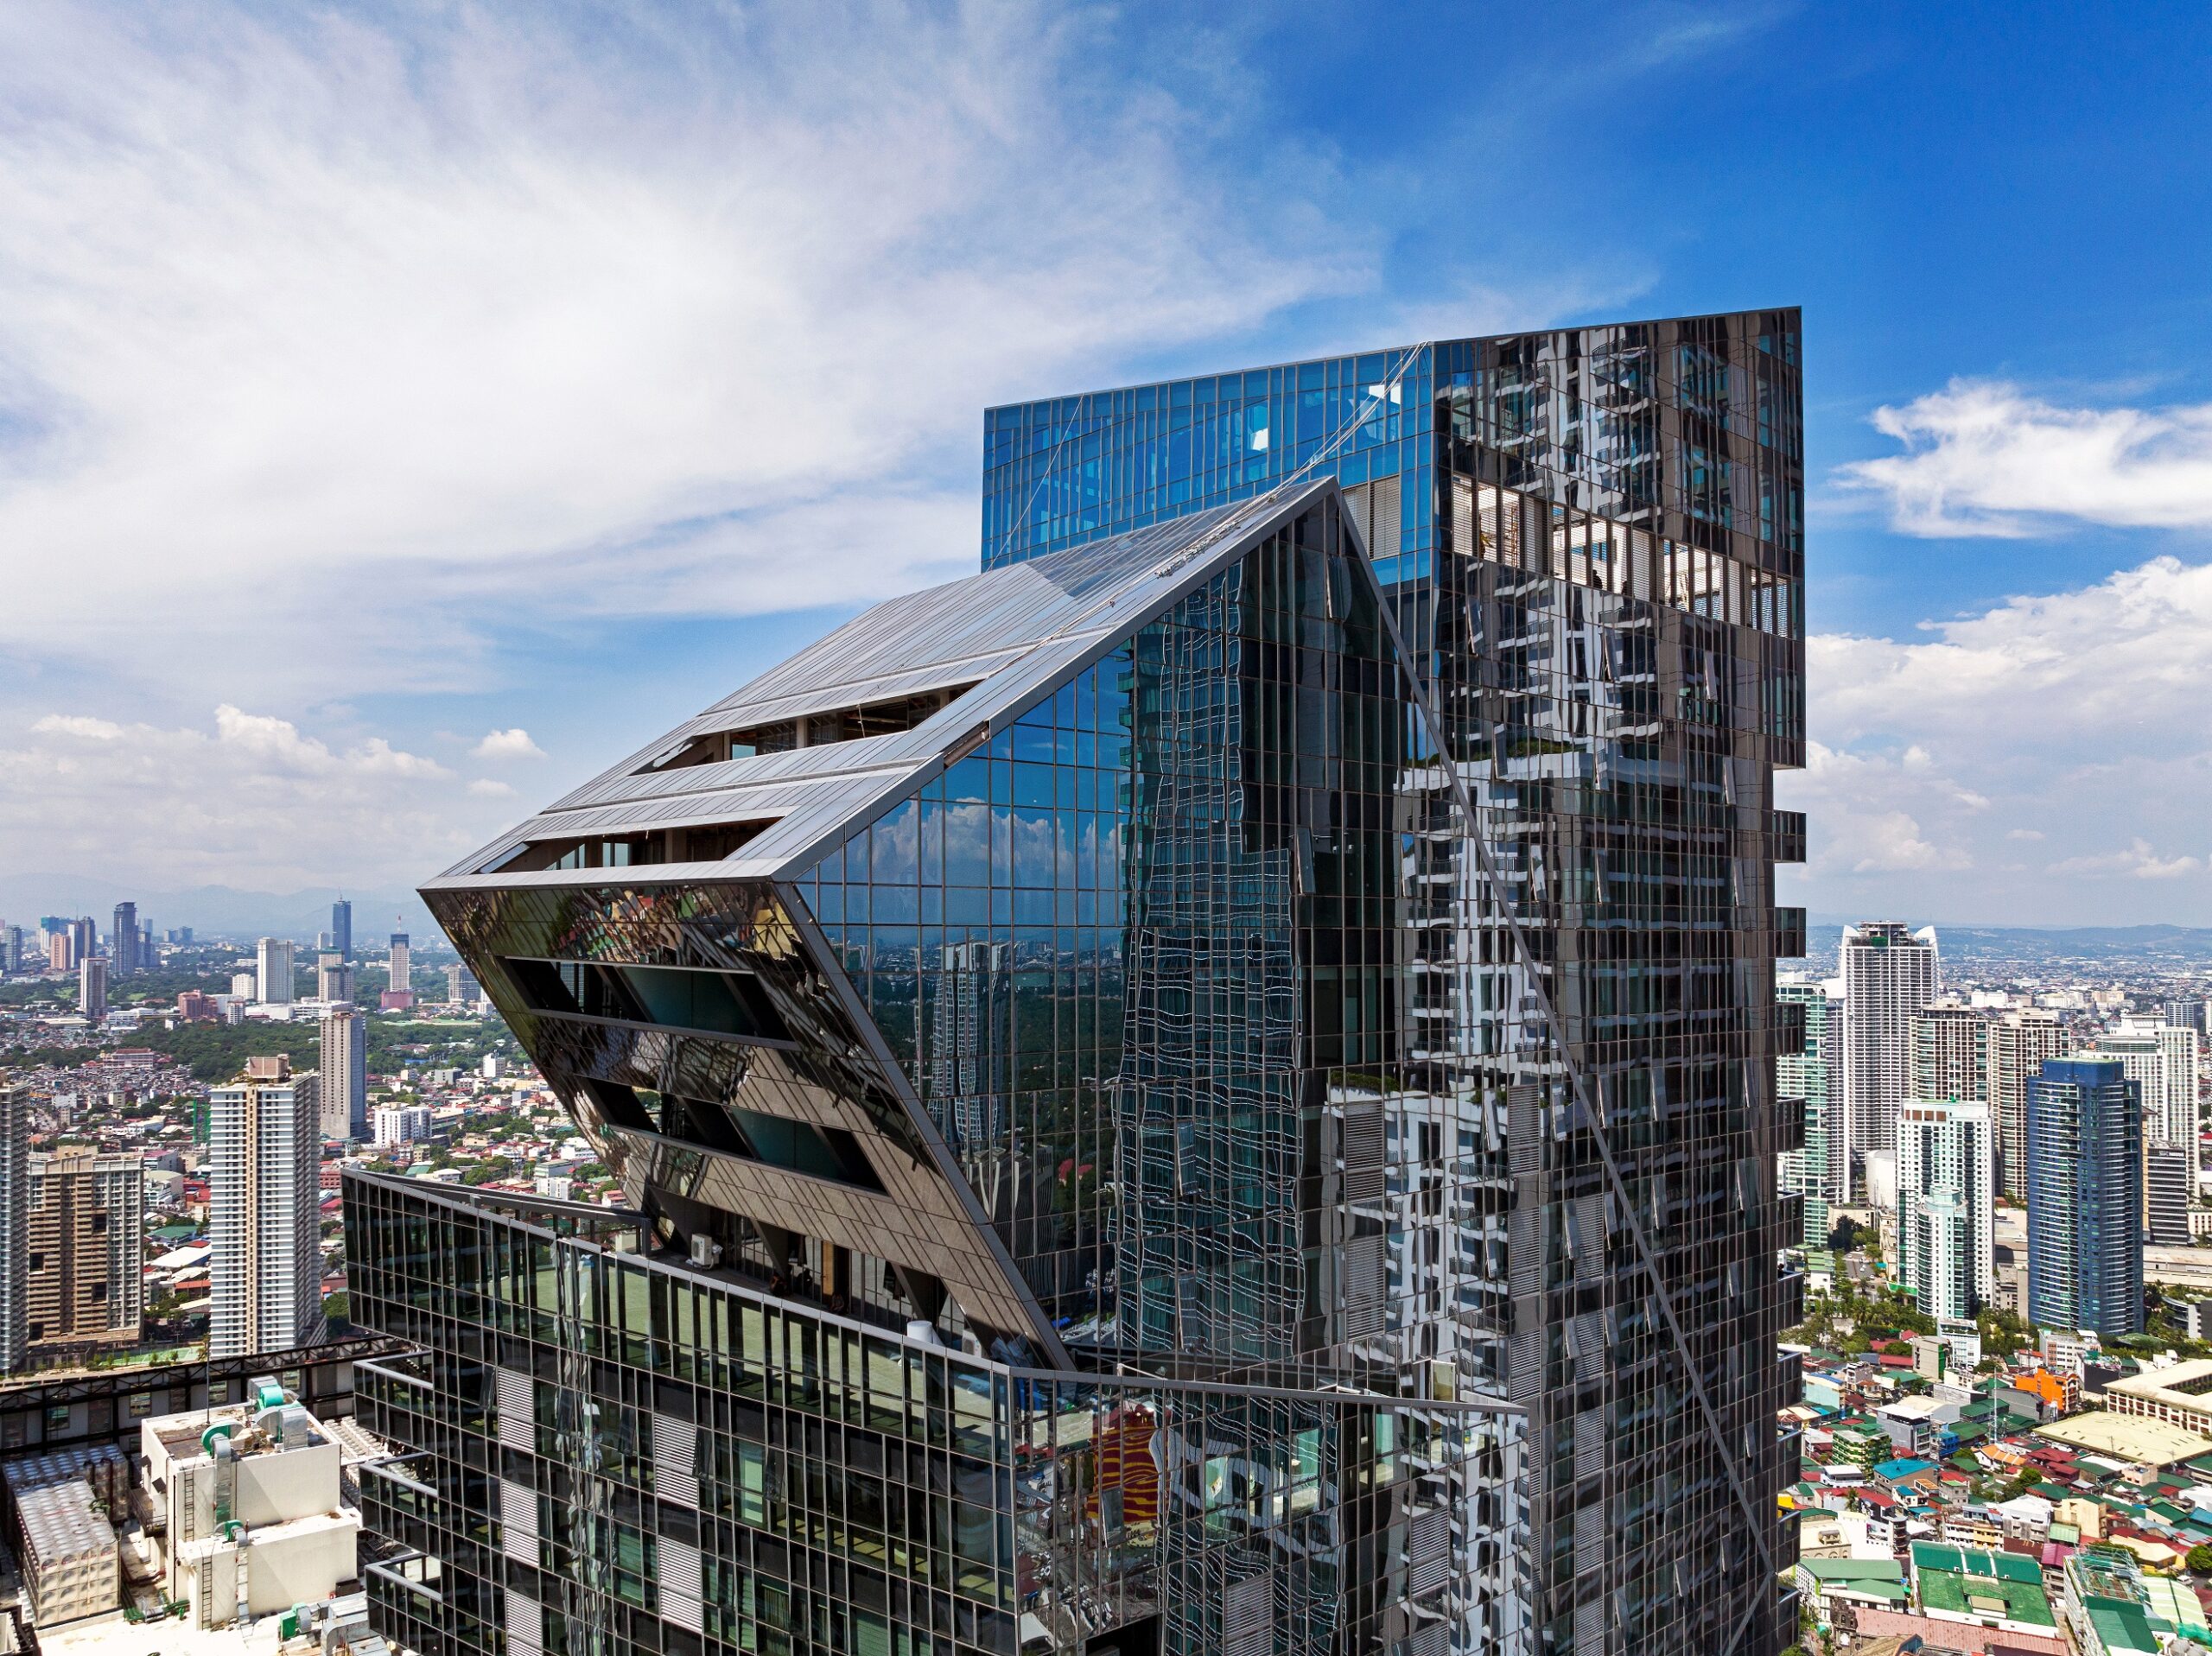 Century Spire's Architecture was designed by Pritzer-Winning Architect Daniel Libeskind